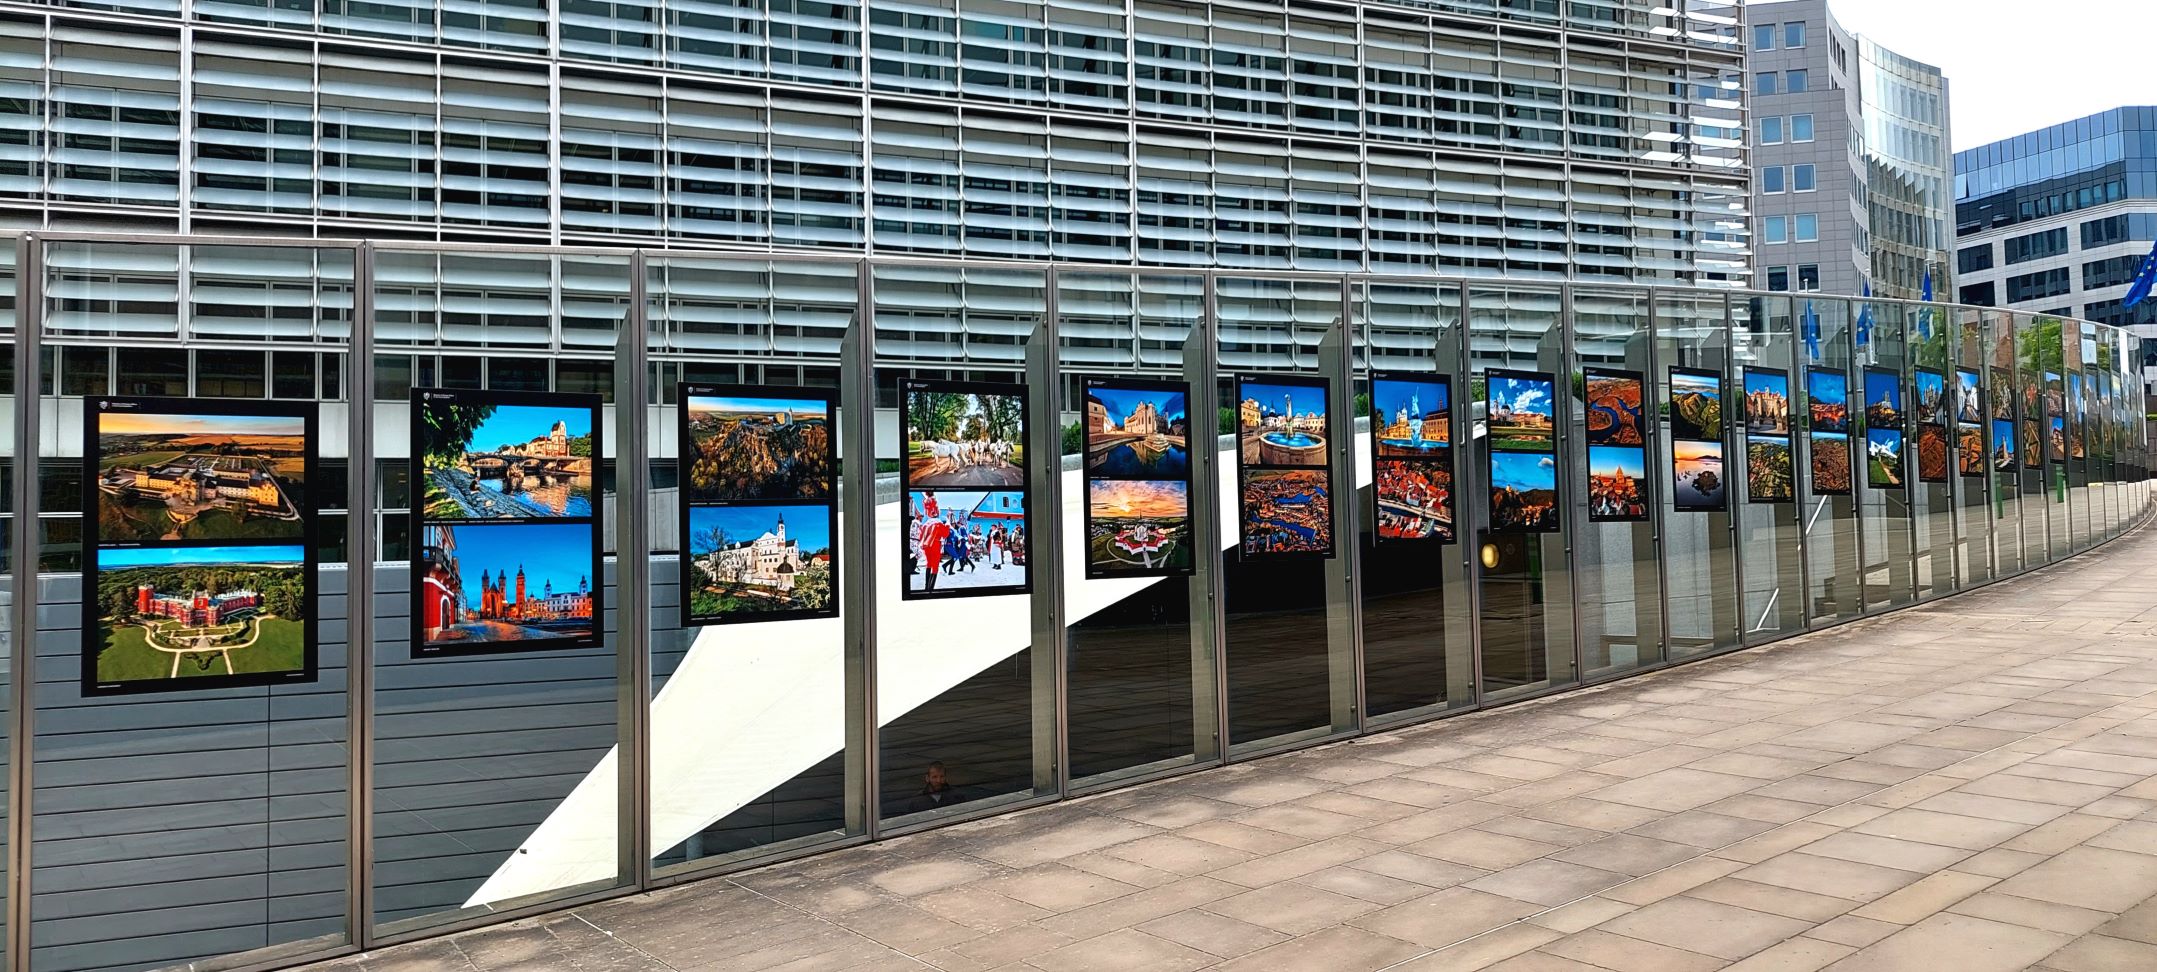  Výstava Klenoty Česka / Jewels of Czechia se prezentuje před budovou Evropské komise v Bruselu až do konce září